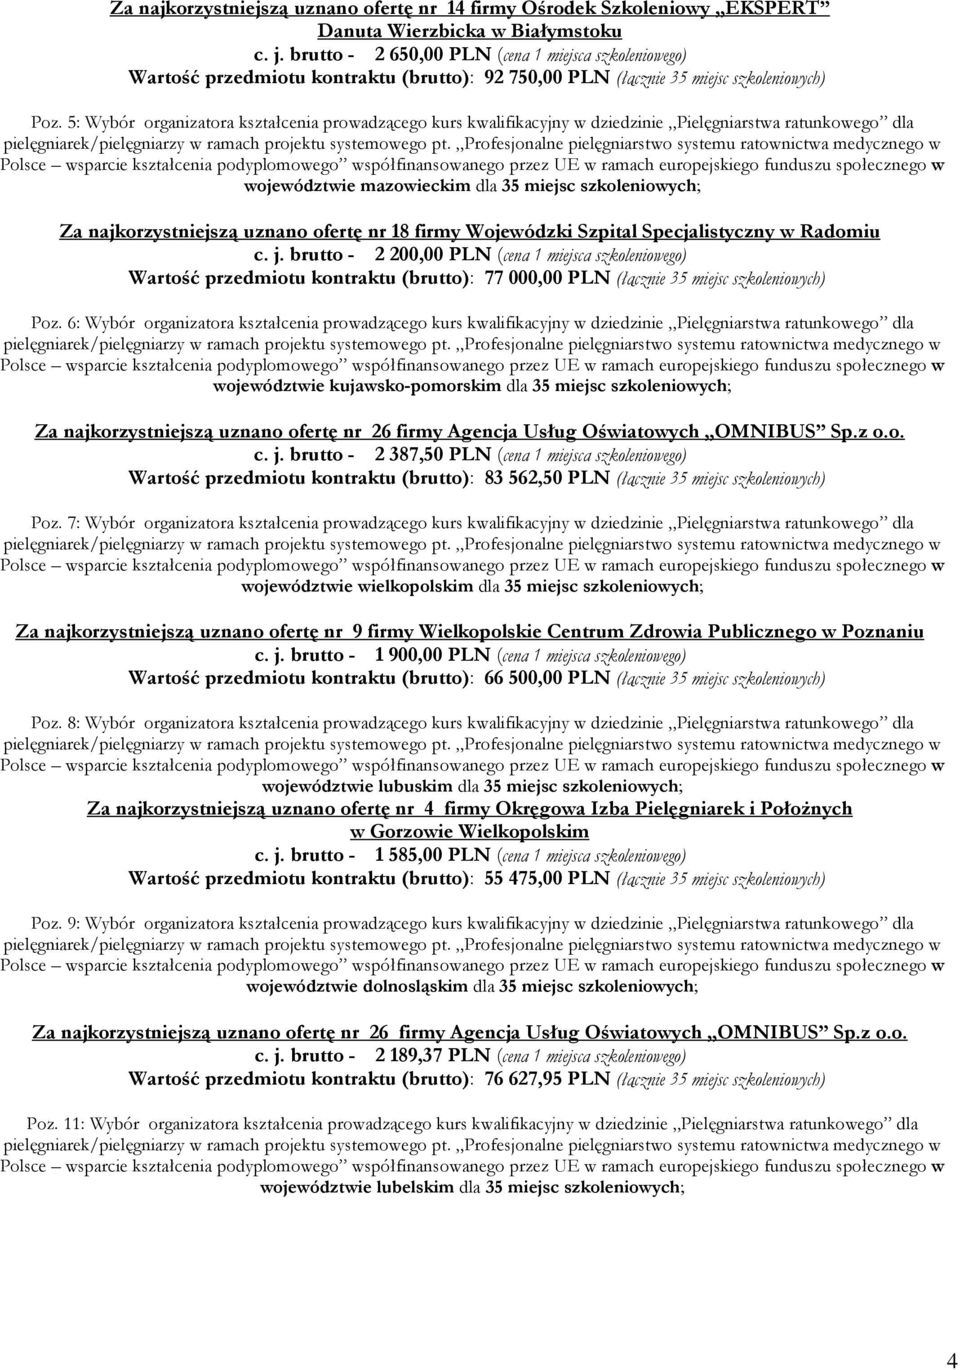 5: Wybór organizatora kształcenia prowadzącego kurs kwalifikacyjny w dziedzinie Pielęgniarstwa ratunkowego dla województwie mazowieckim dla 35 miejsc szkoleniowych; Za najkorzystniejszą uznano ofertę